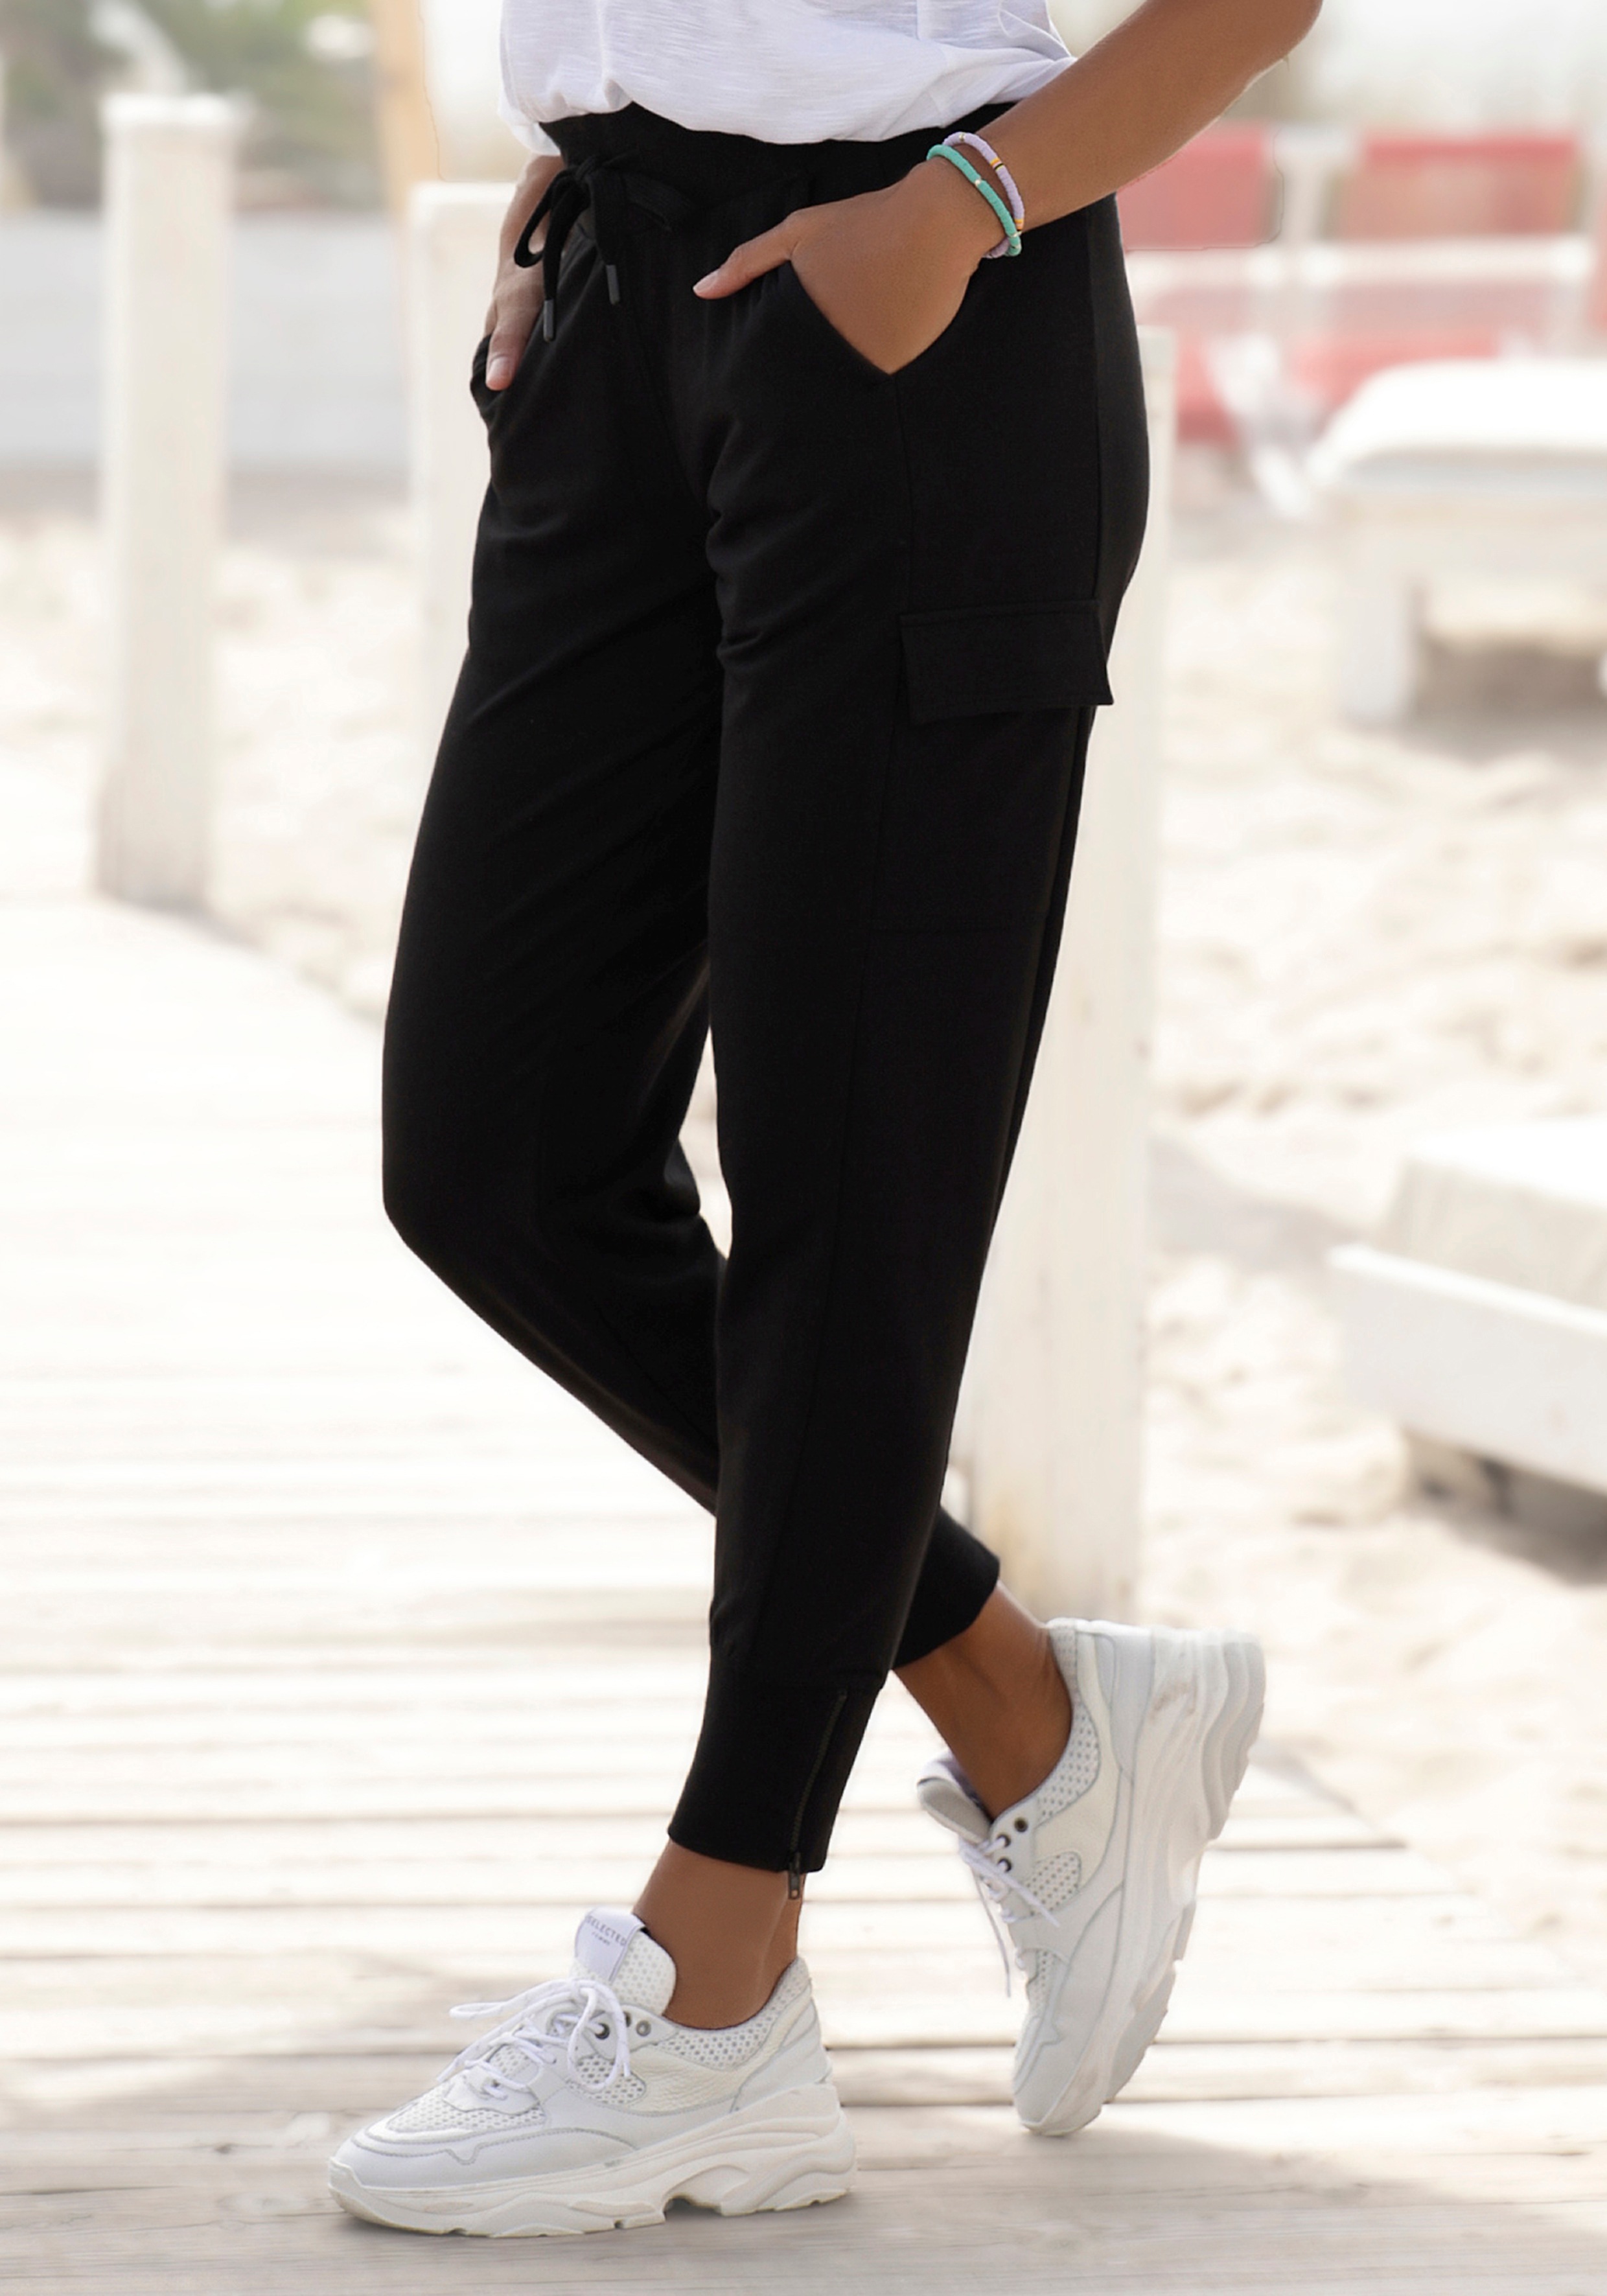 Venice Beach Jogginghose, mit seitlichen Taschen am Bein schwarz Damen Jogginghose Hosen